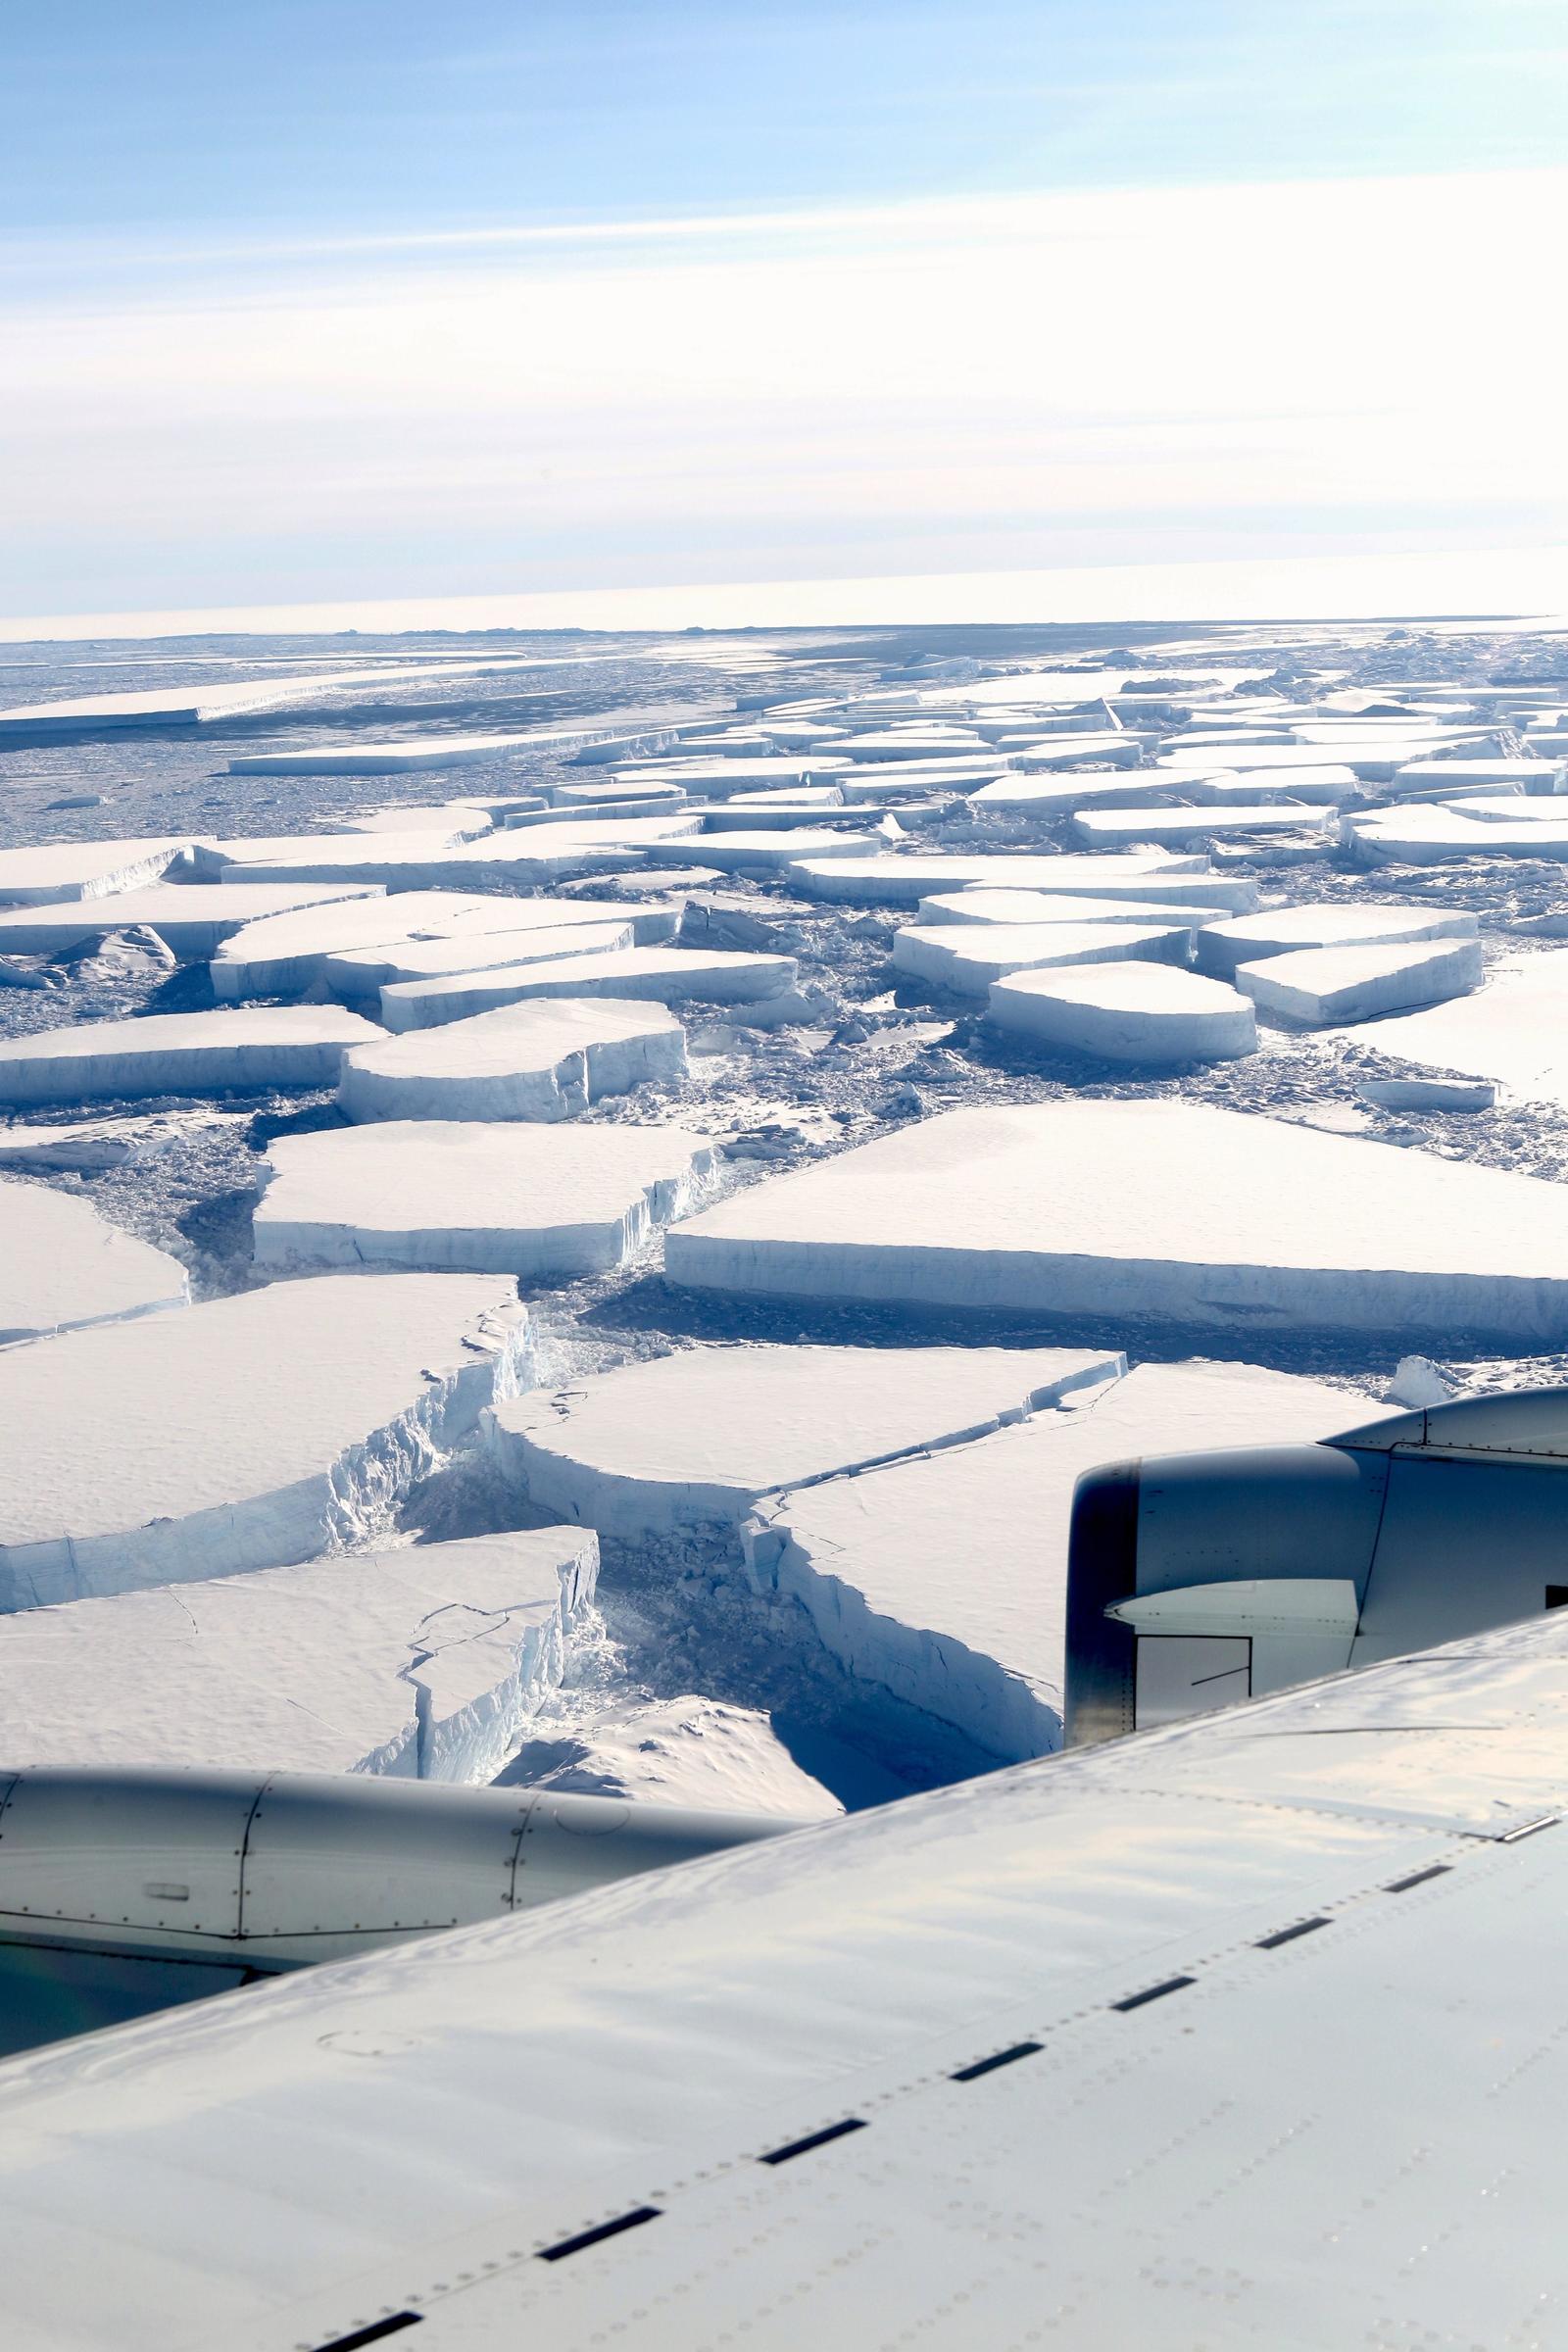 Riesgo. Problemas nunca vistos del derretimiento y problemas inusuales en invierno se han dado en la Antártida y el Ártico. (AP)